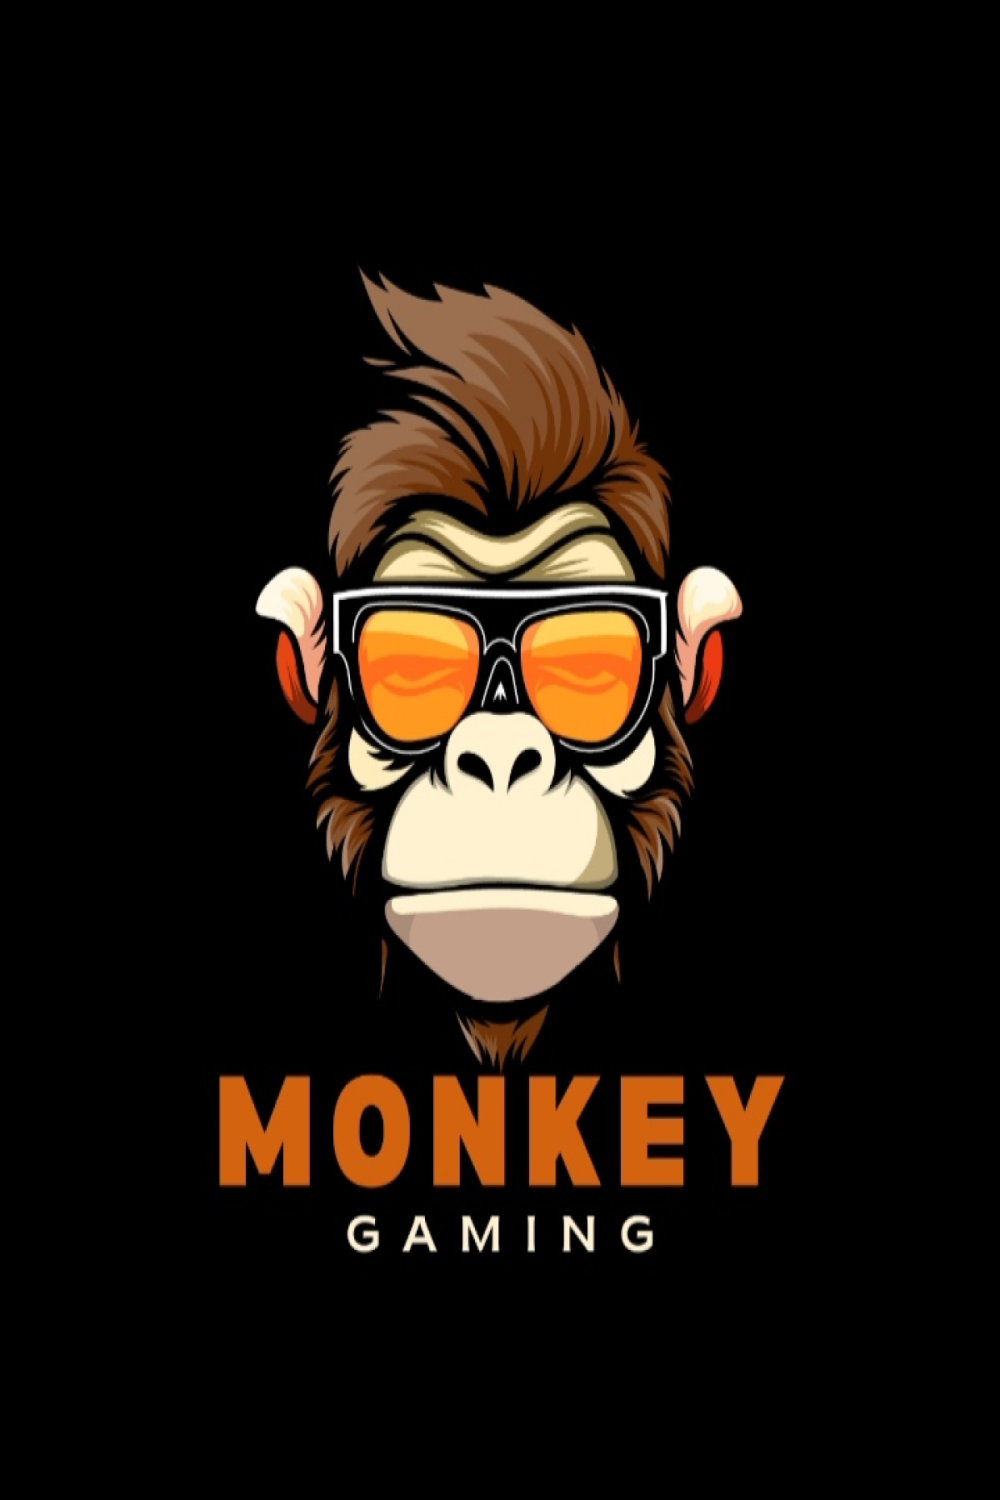 Monkey logo pinterest preview image.